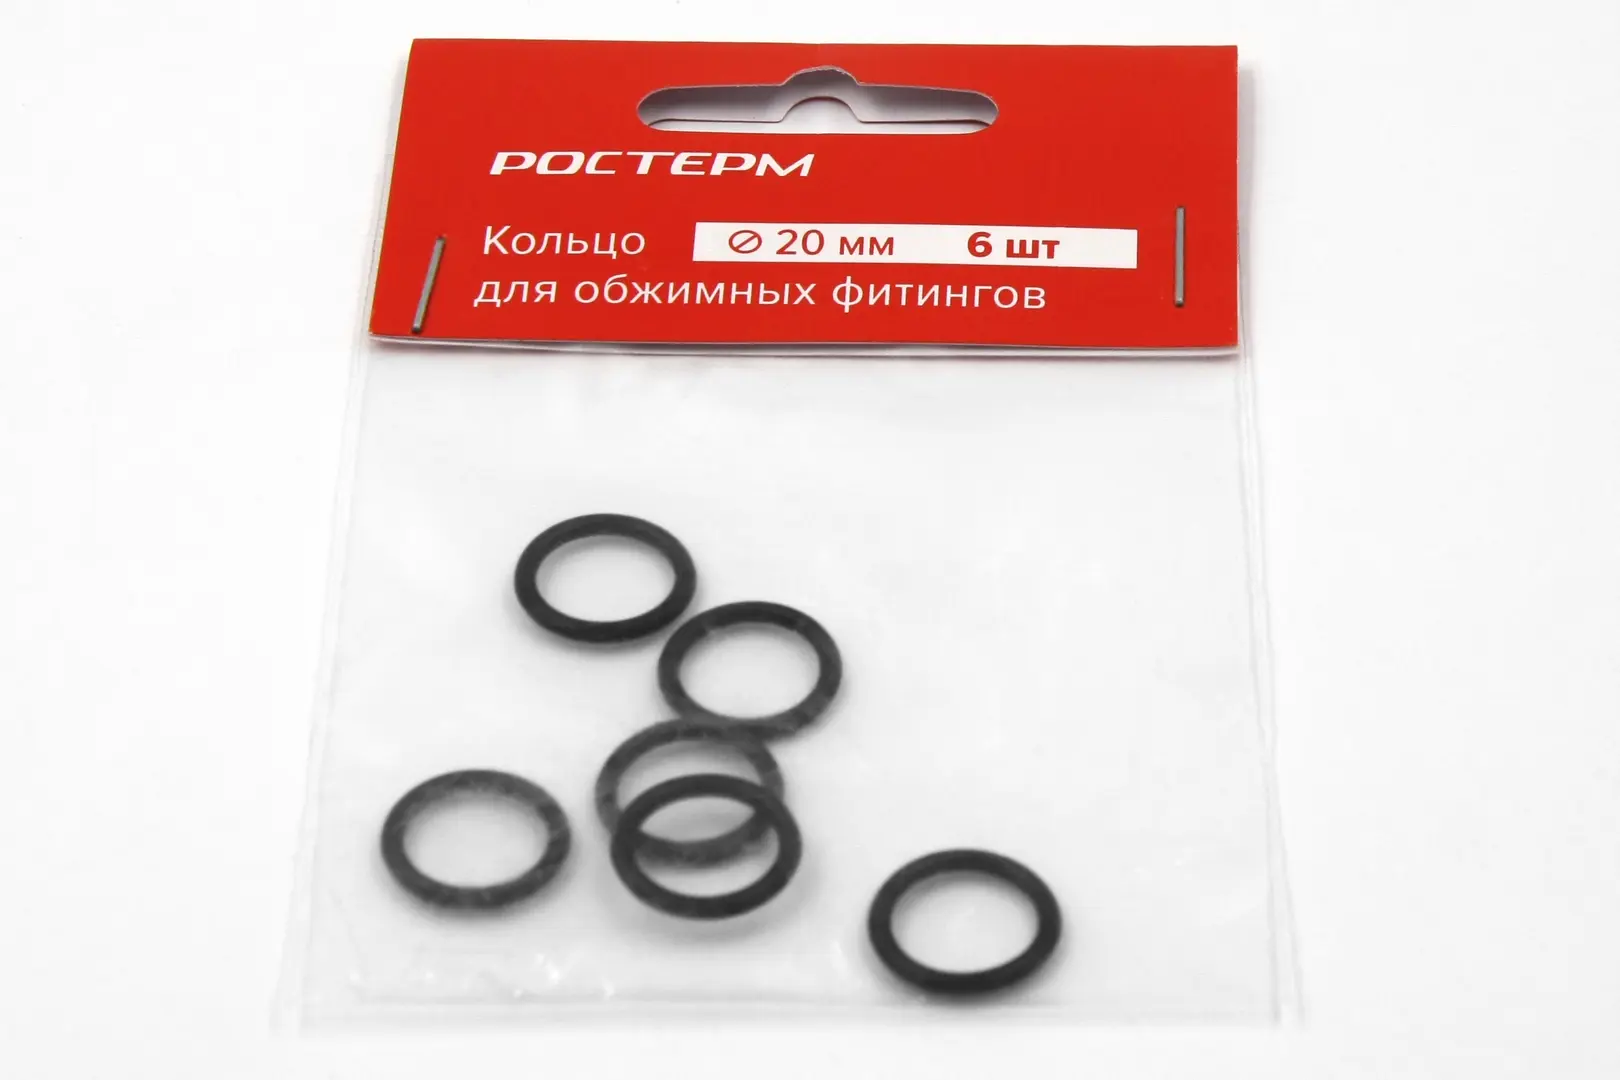 Кольцо для обжима фитингов Ростерм 20 мм 6 штук цвет чёрный ключ для фитингов unidelta